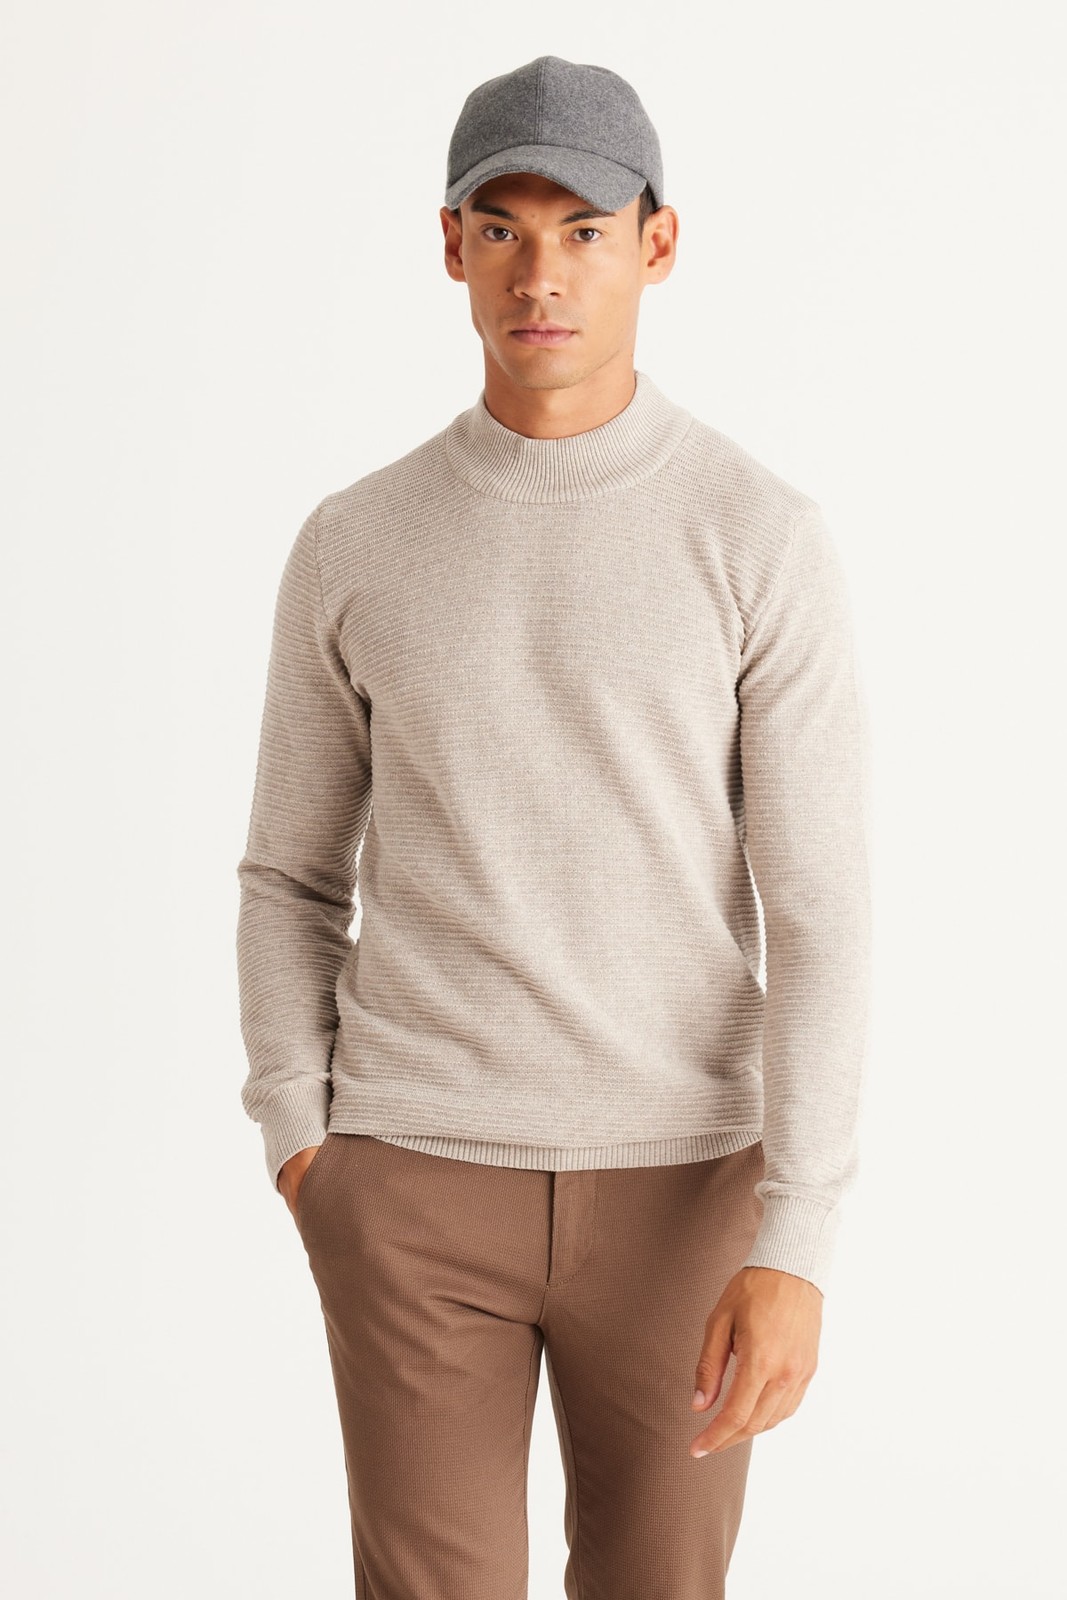 AC&Co / Altınyıldız Classics Men's Beige Melange Recycle Standard Fit Half Turtleneck Cotton Patterned Knitwear Sweater